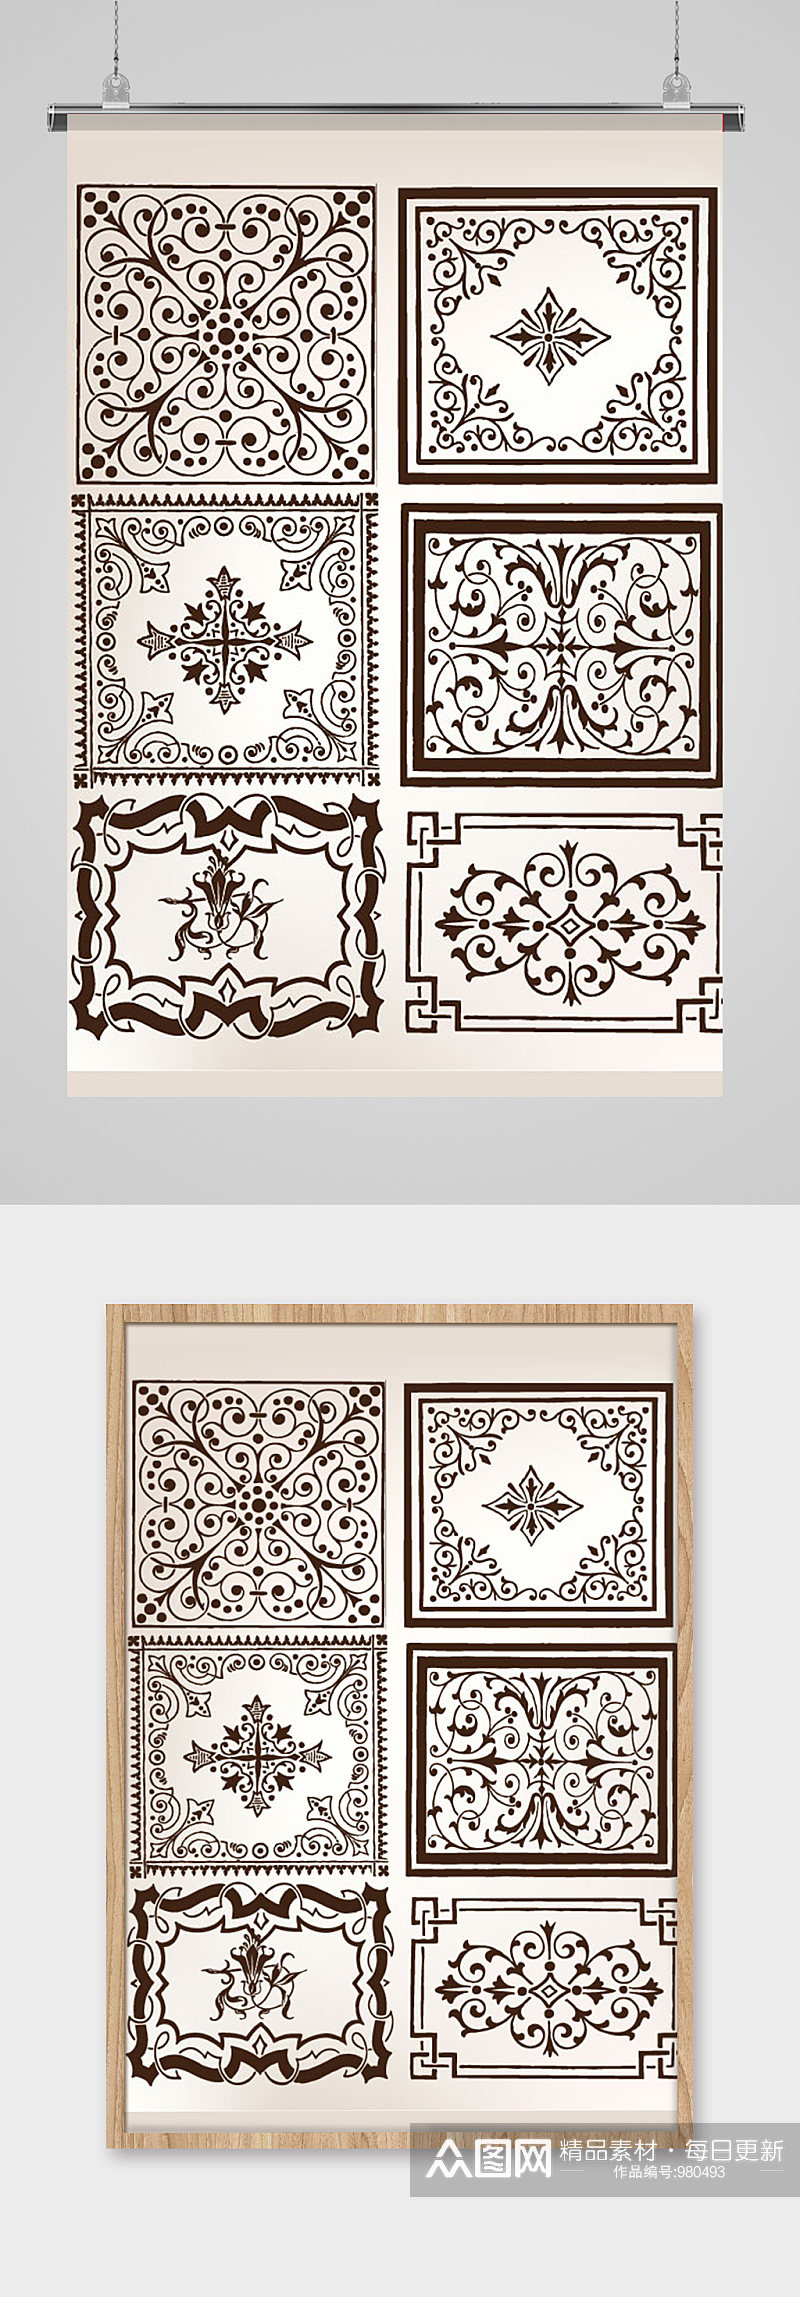 古典欧式窗花花纹边框矢量素材素材